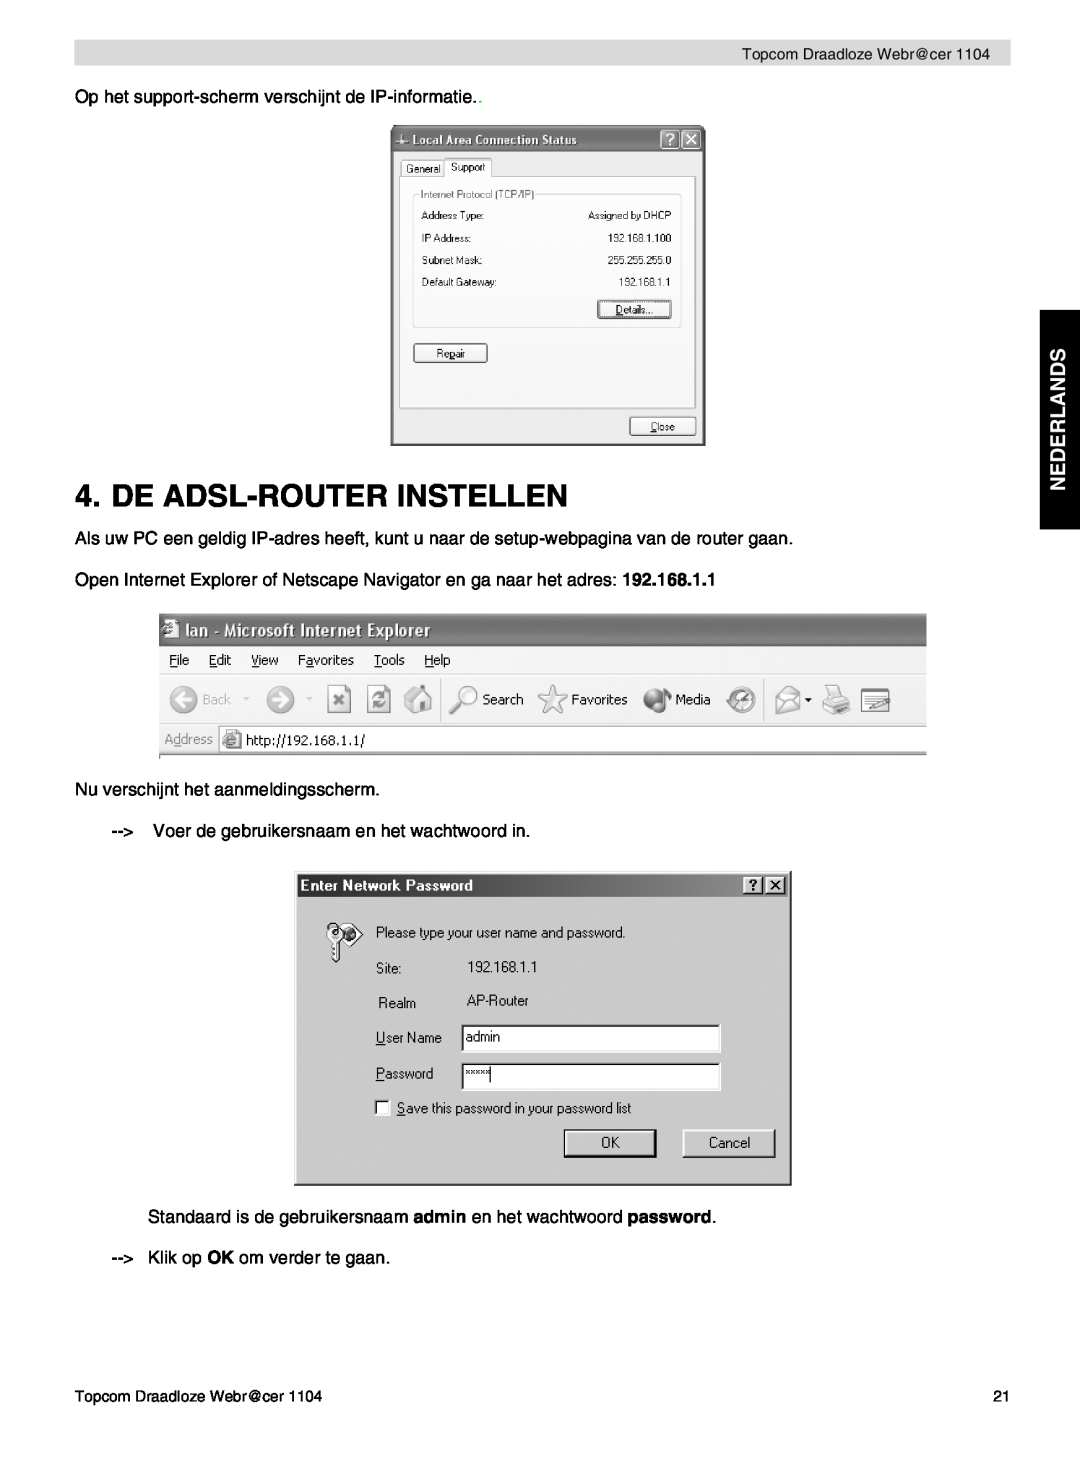 Topcom 1104 manual do utilizador De Adsl-Router Instellen, Nederlands 